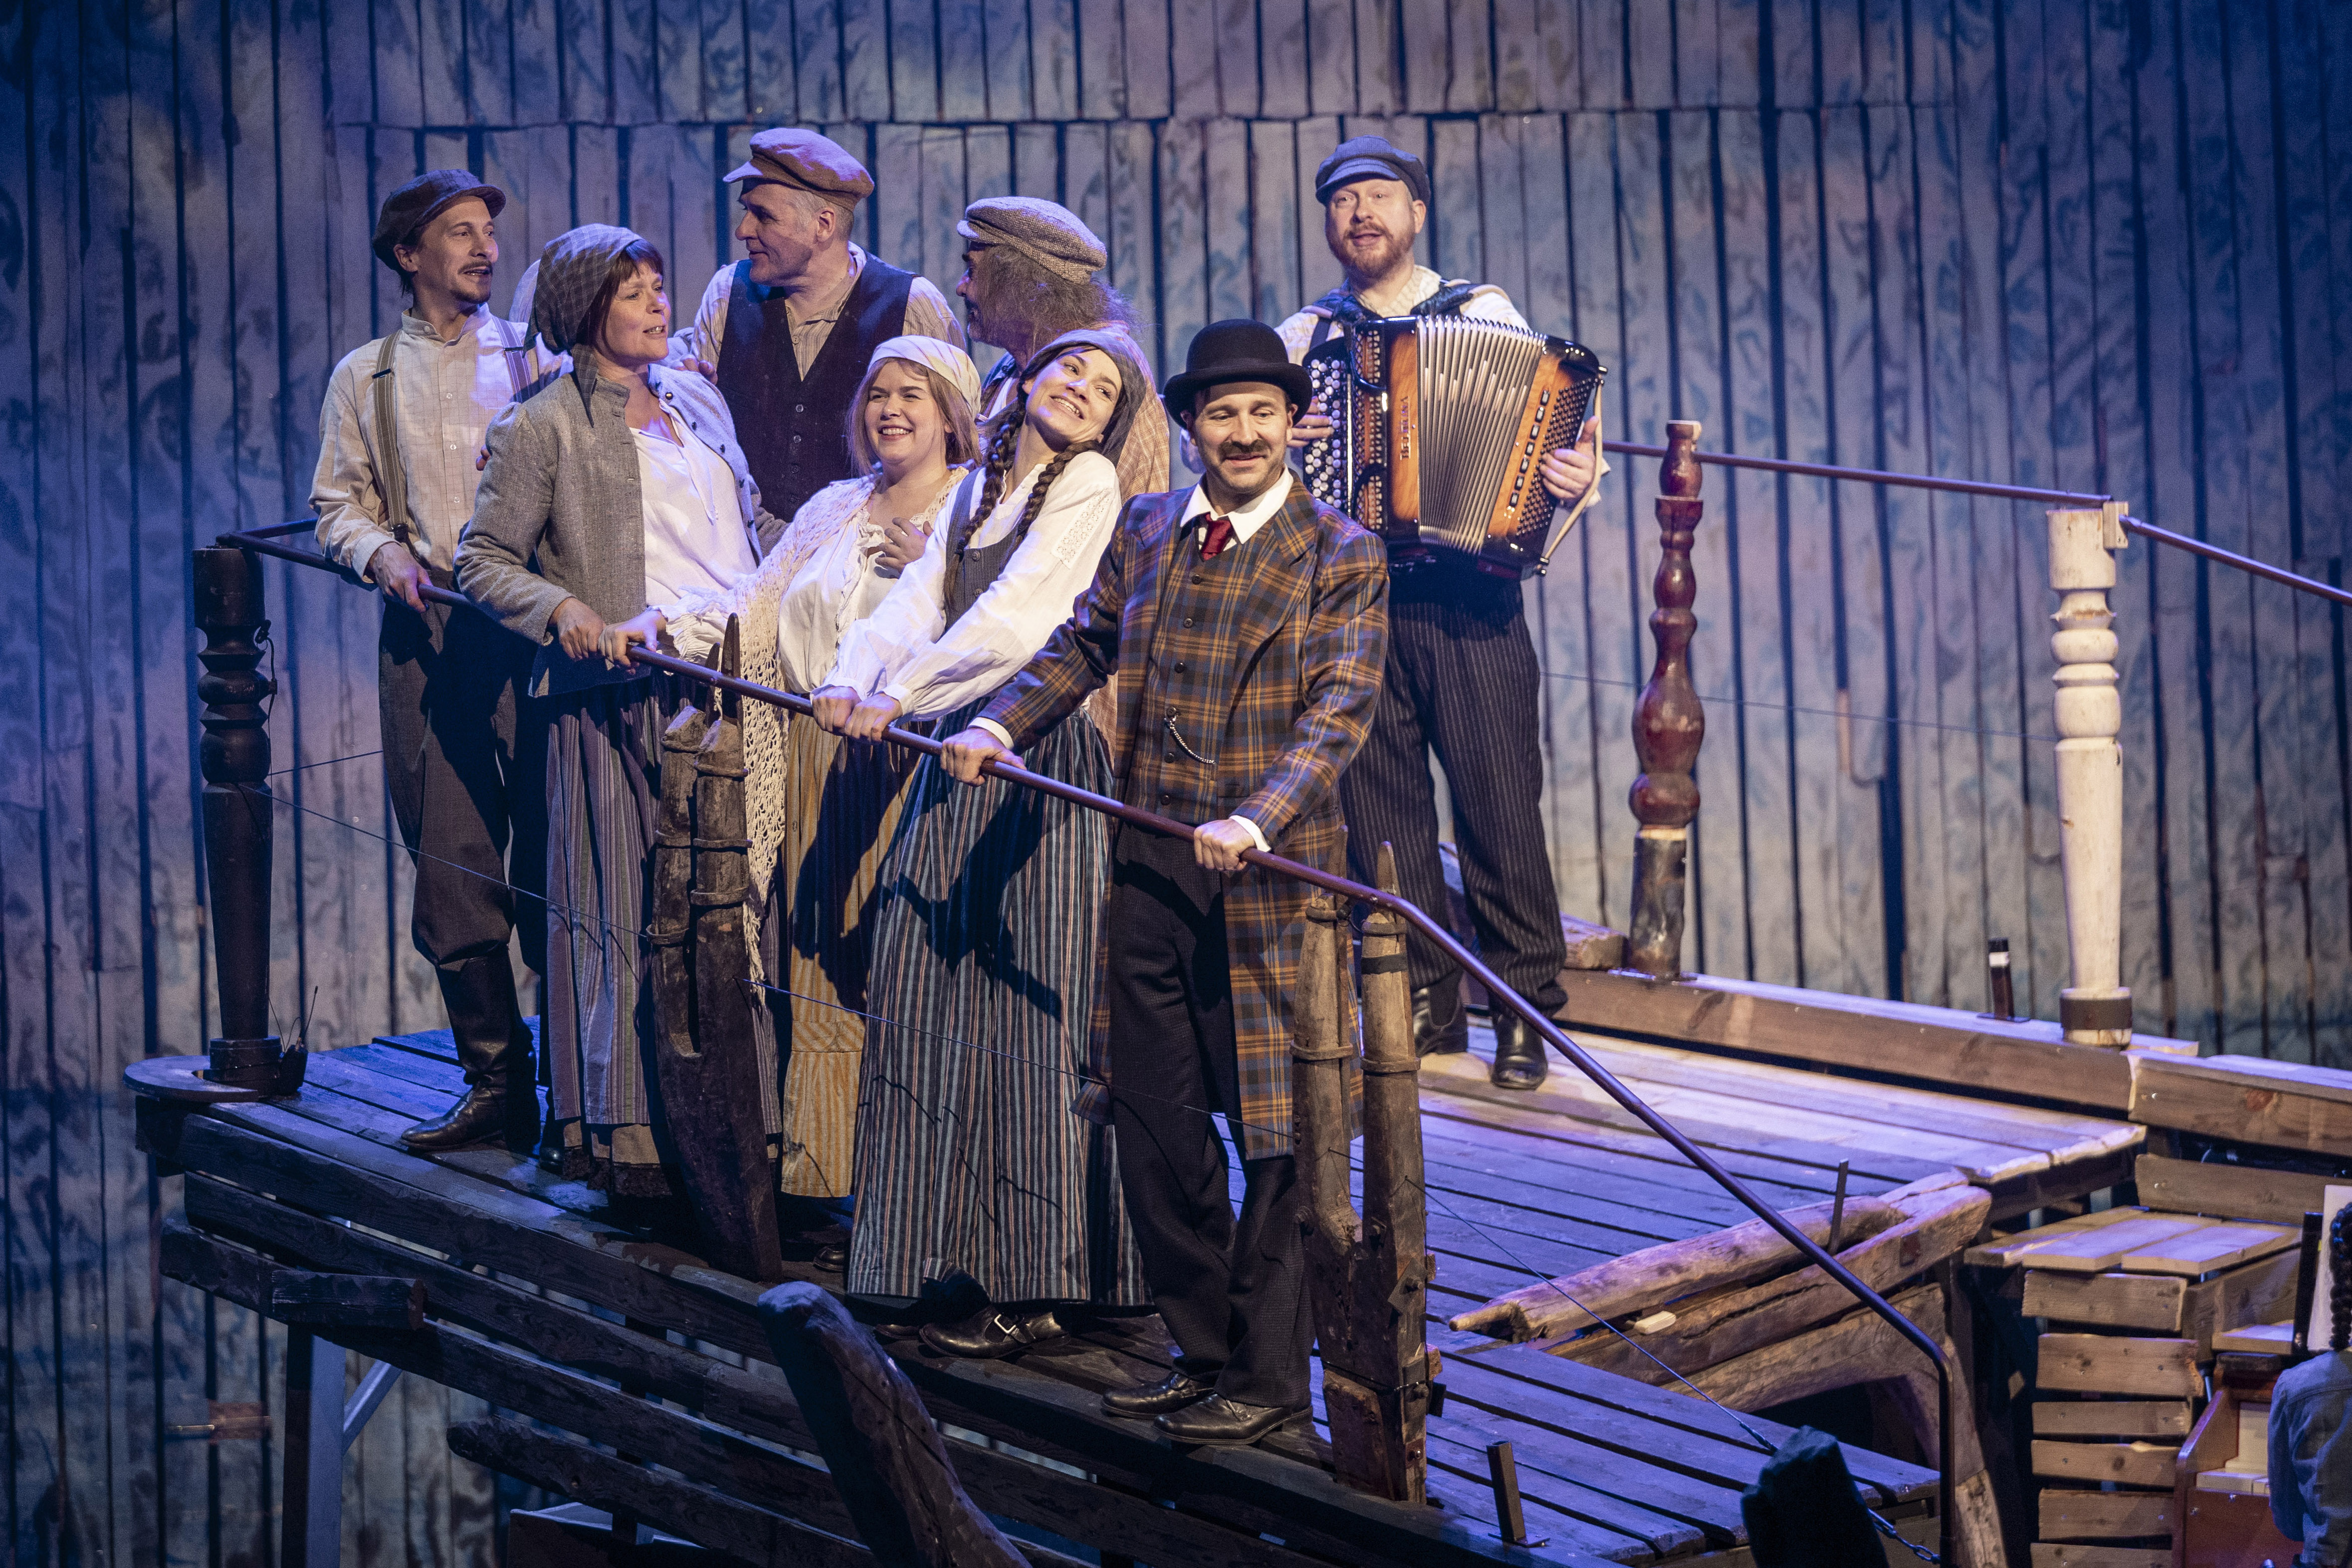 Kahdeksan näyttelijää, jotka ovat pukeutuneina 1900-luvun alun vaatteisiin seisovat laivankeulaa muistuttavassa lavasteessa. 